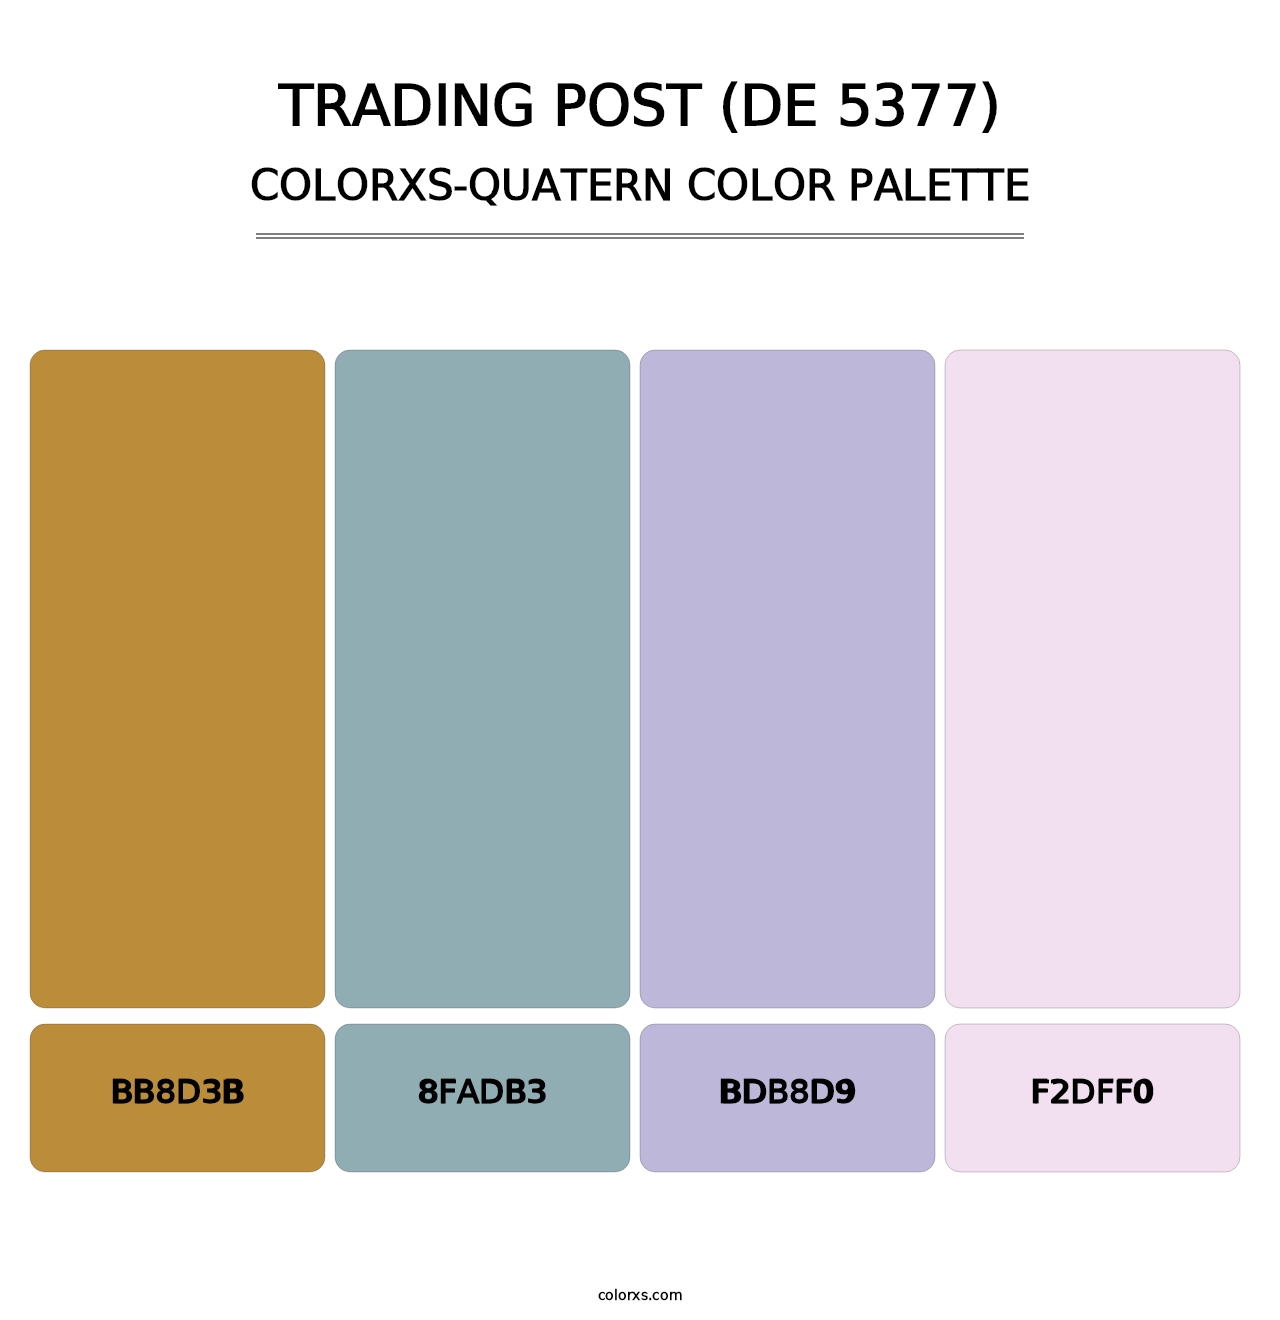 Trading Post (DE 5377) - Colorxs Quatern Palette